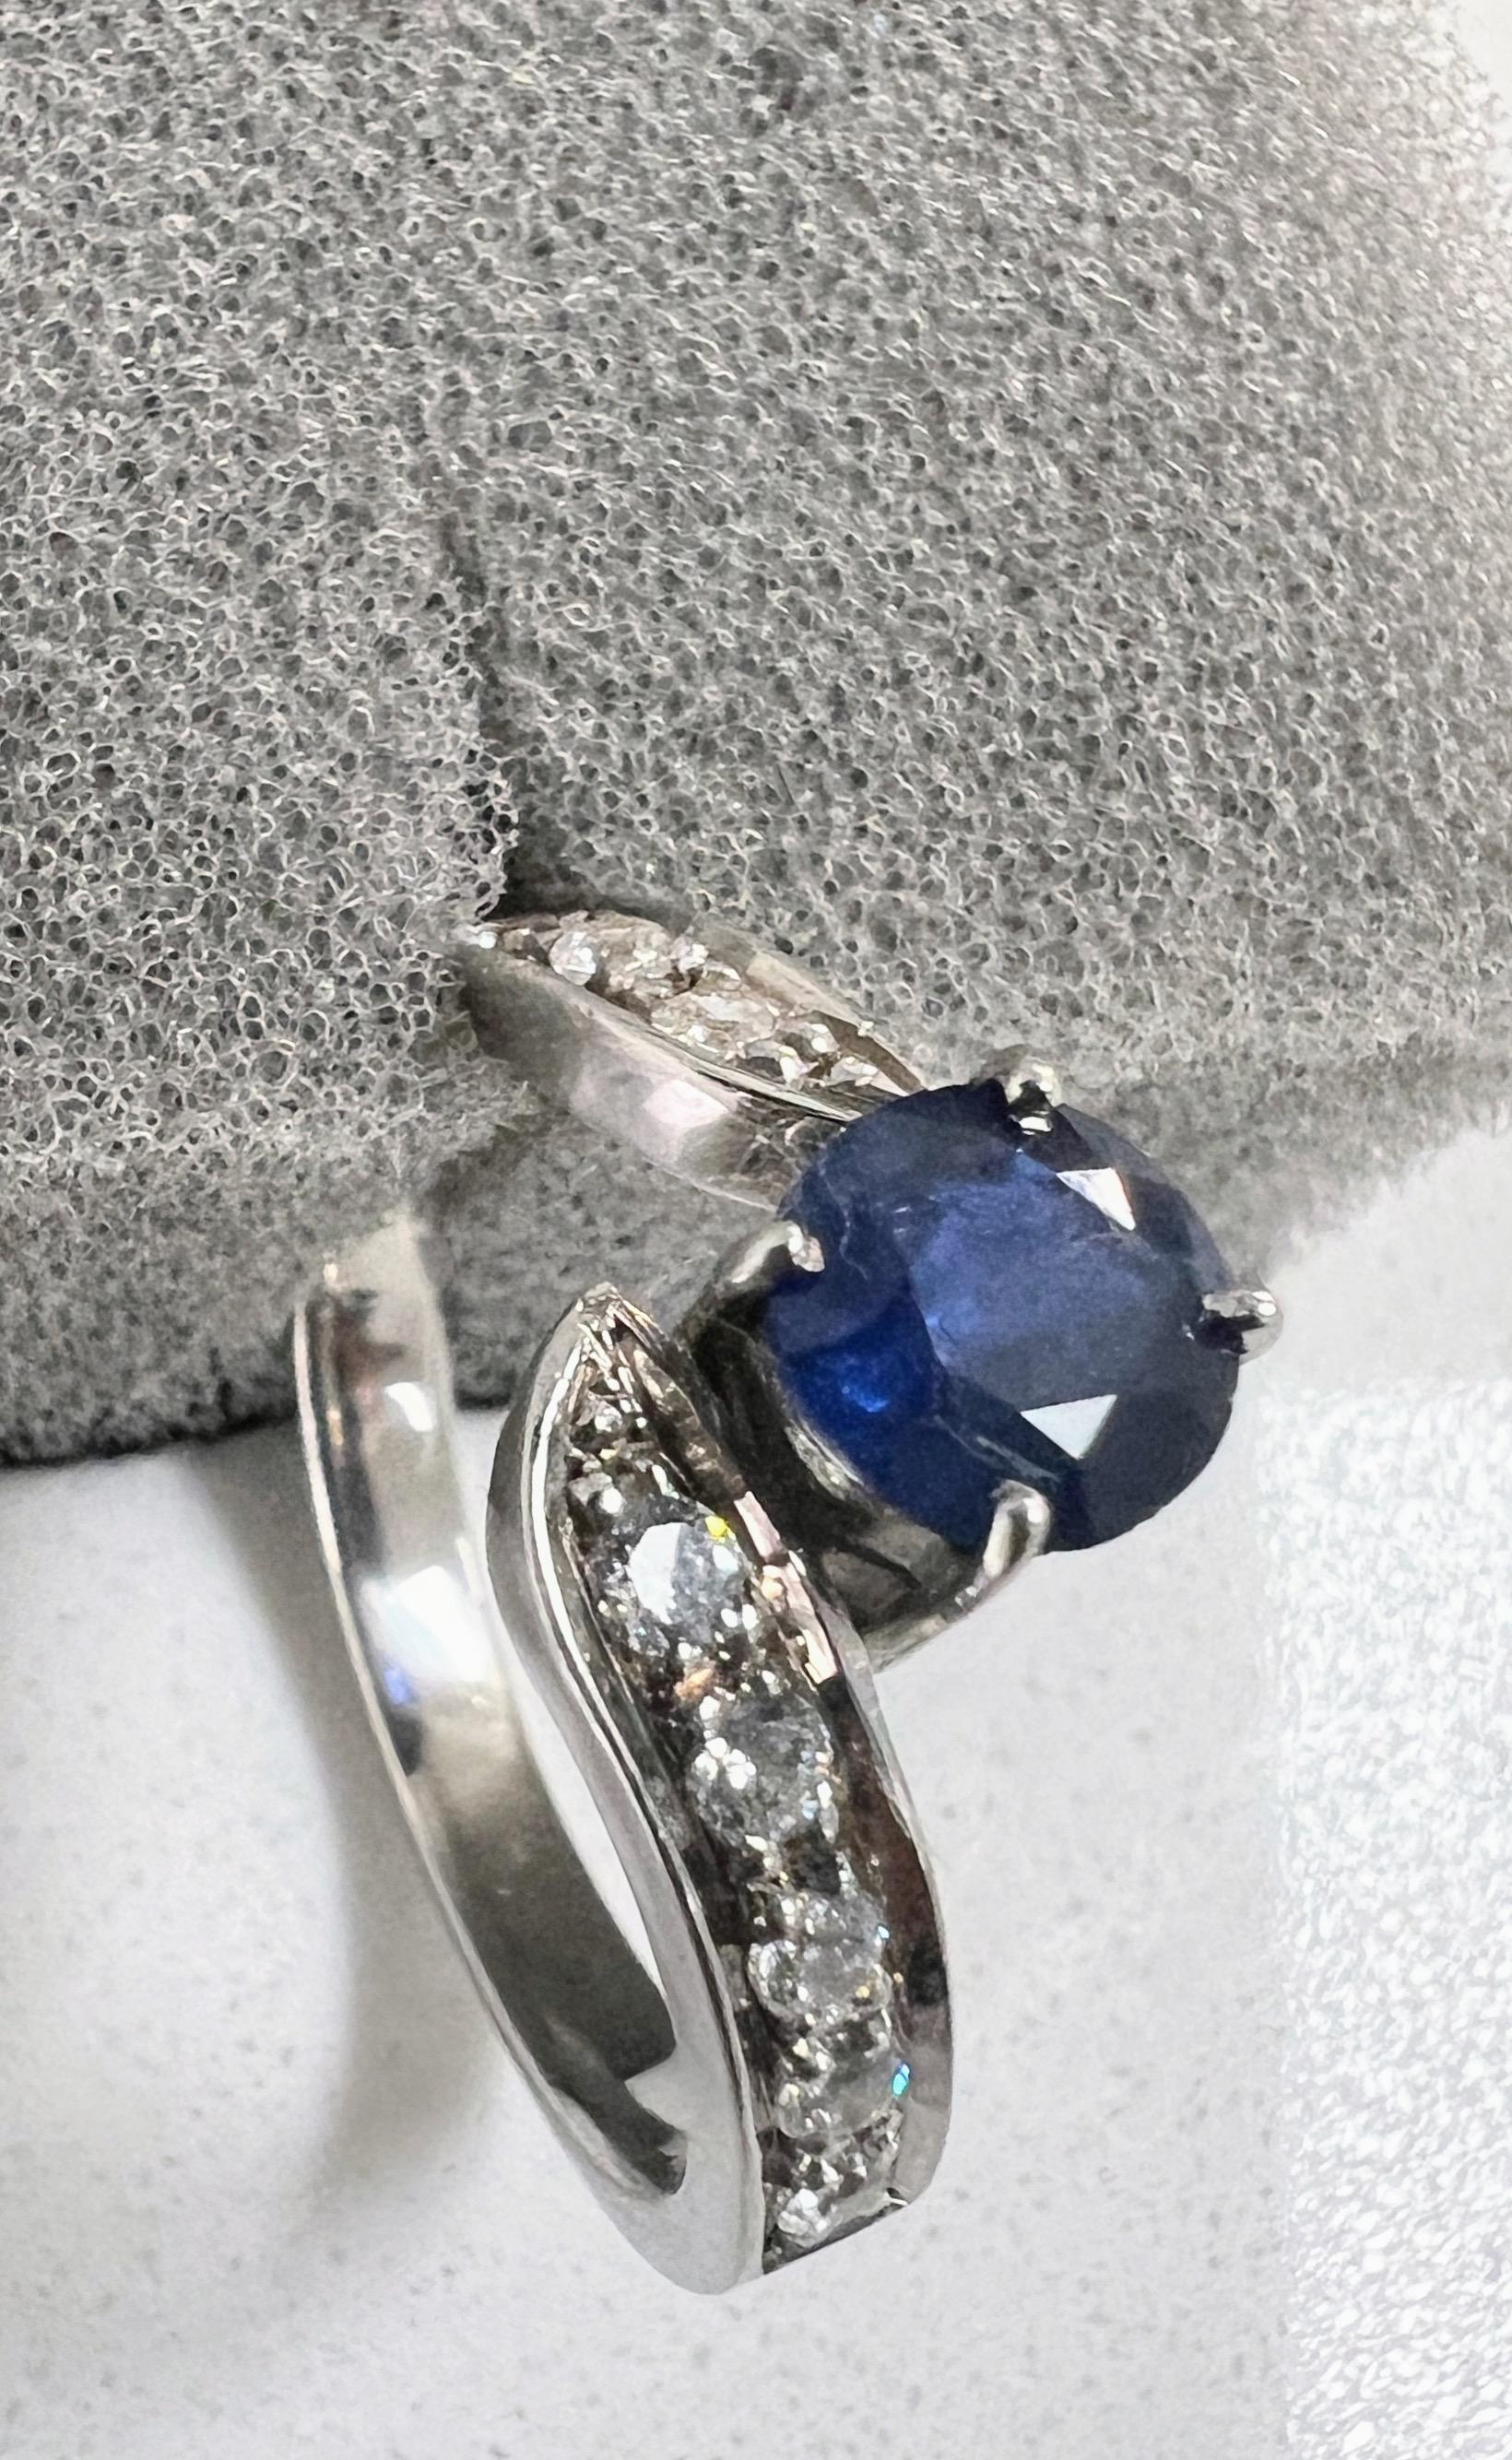 Erhöhen Sie Ihre Liebesgeschichte mit unserem bezaubernden Ring mit einem blauen Saphir von 1 Karat, umgeben von einem schimmernden Halo aus strahlend weißen Saphiren auf beiden Seiten. 

Wesentliche Merkmale:
Geschmückt mit einem atemberaubenden